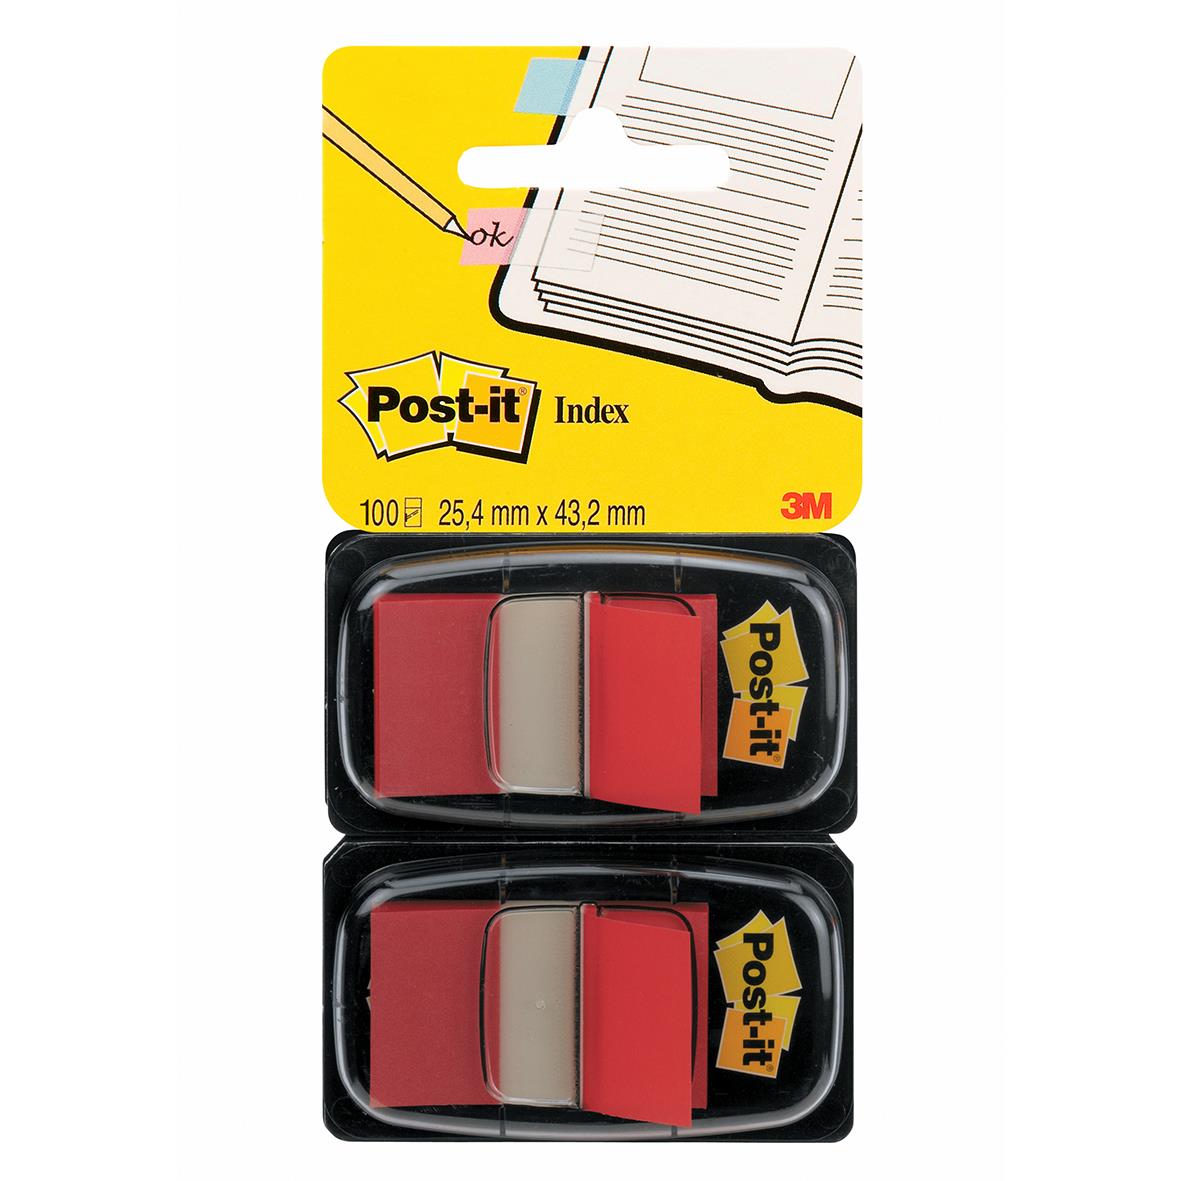 Märkflik Post-it Index 680 röd 2-pack 11350011_1